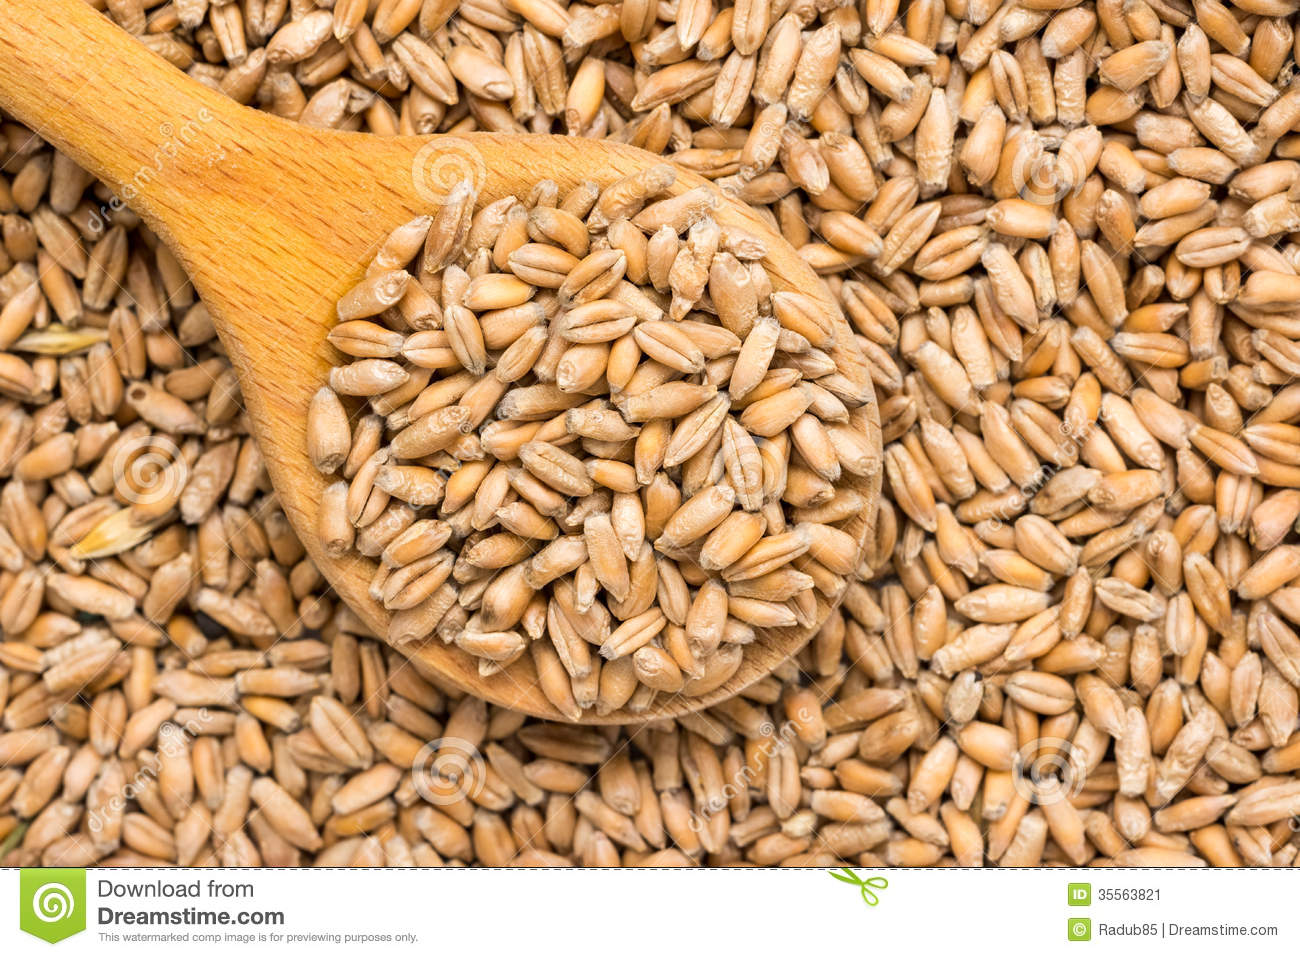 دام برس : دام برس | توزيع ألف منحة من بذار القمح والشعير على المزارعين بالقنيطرة